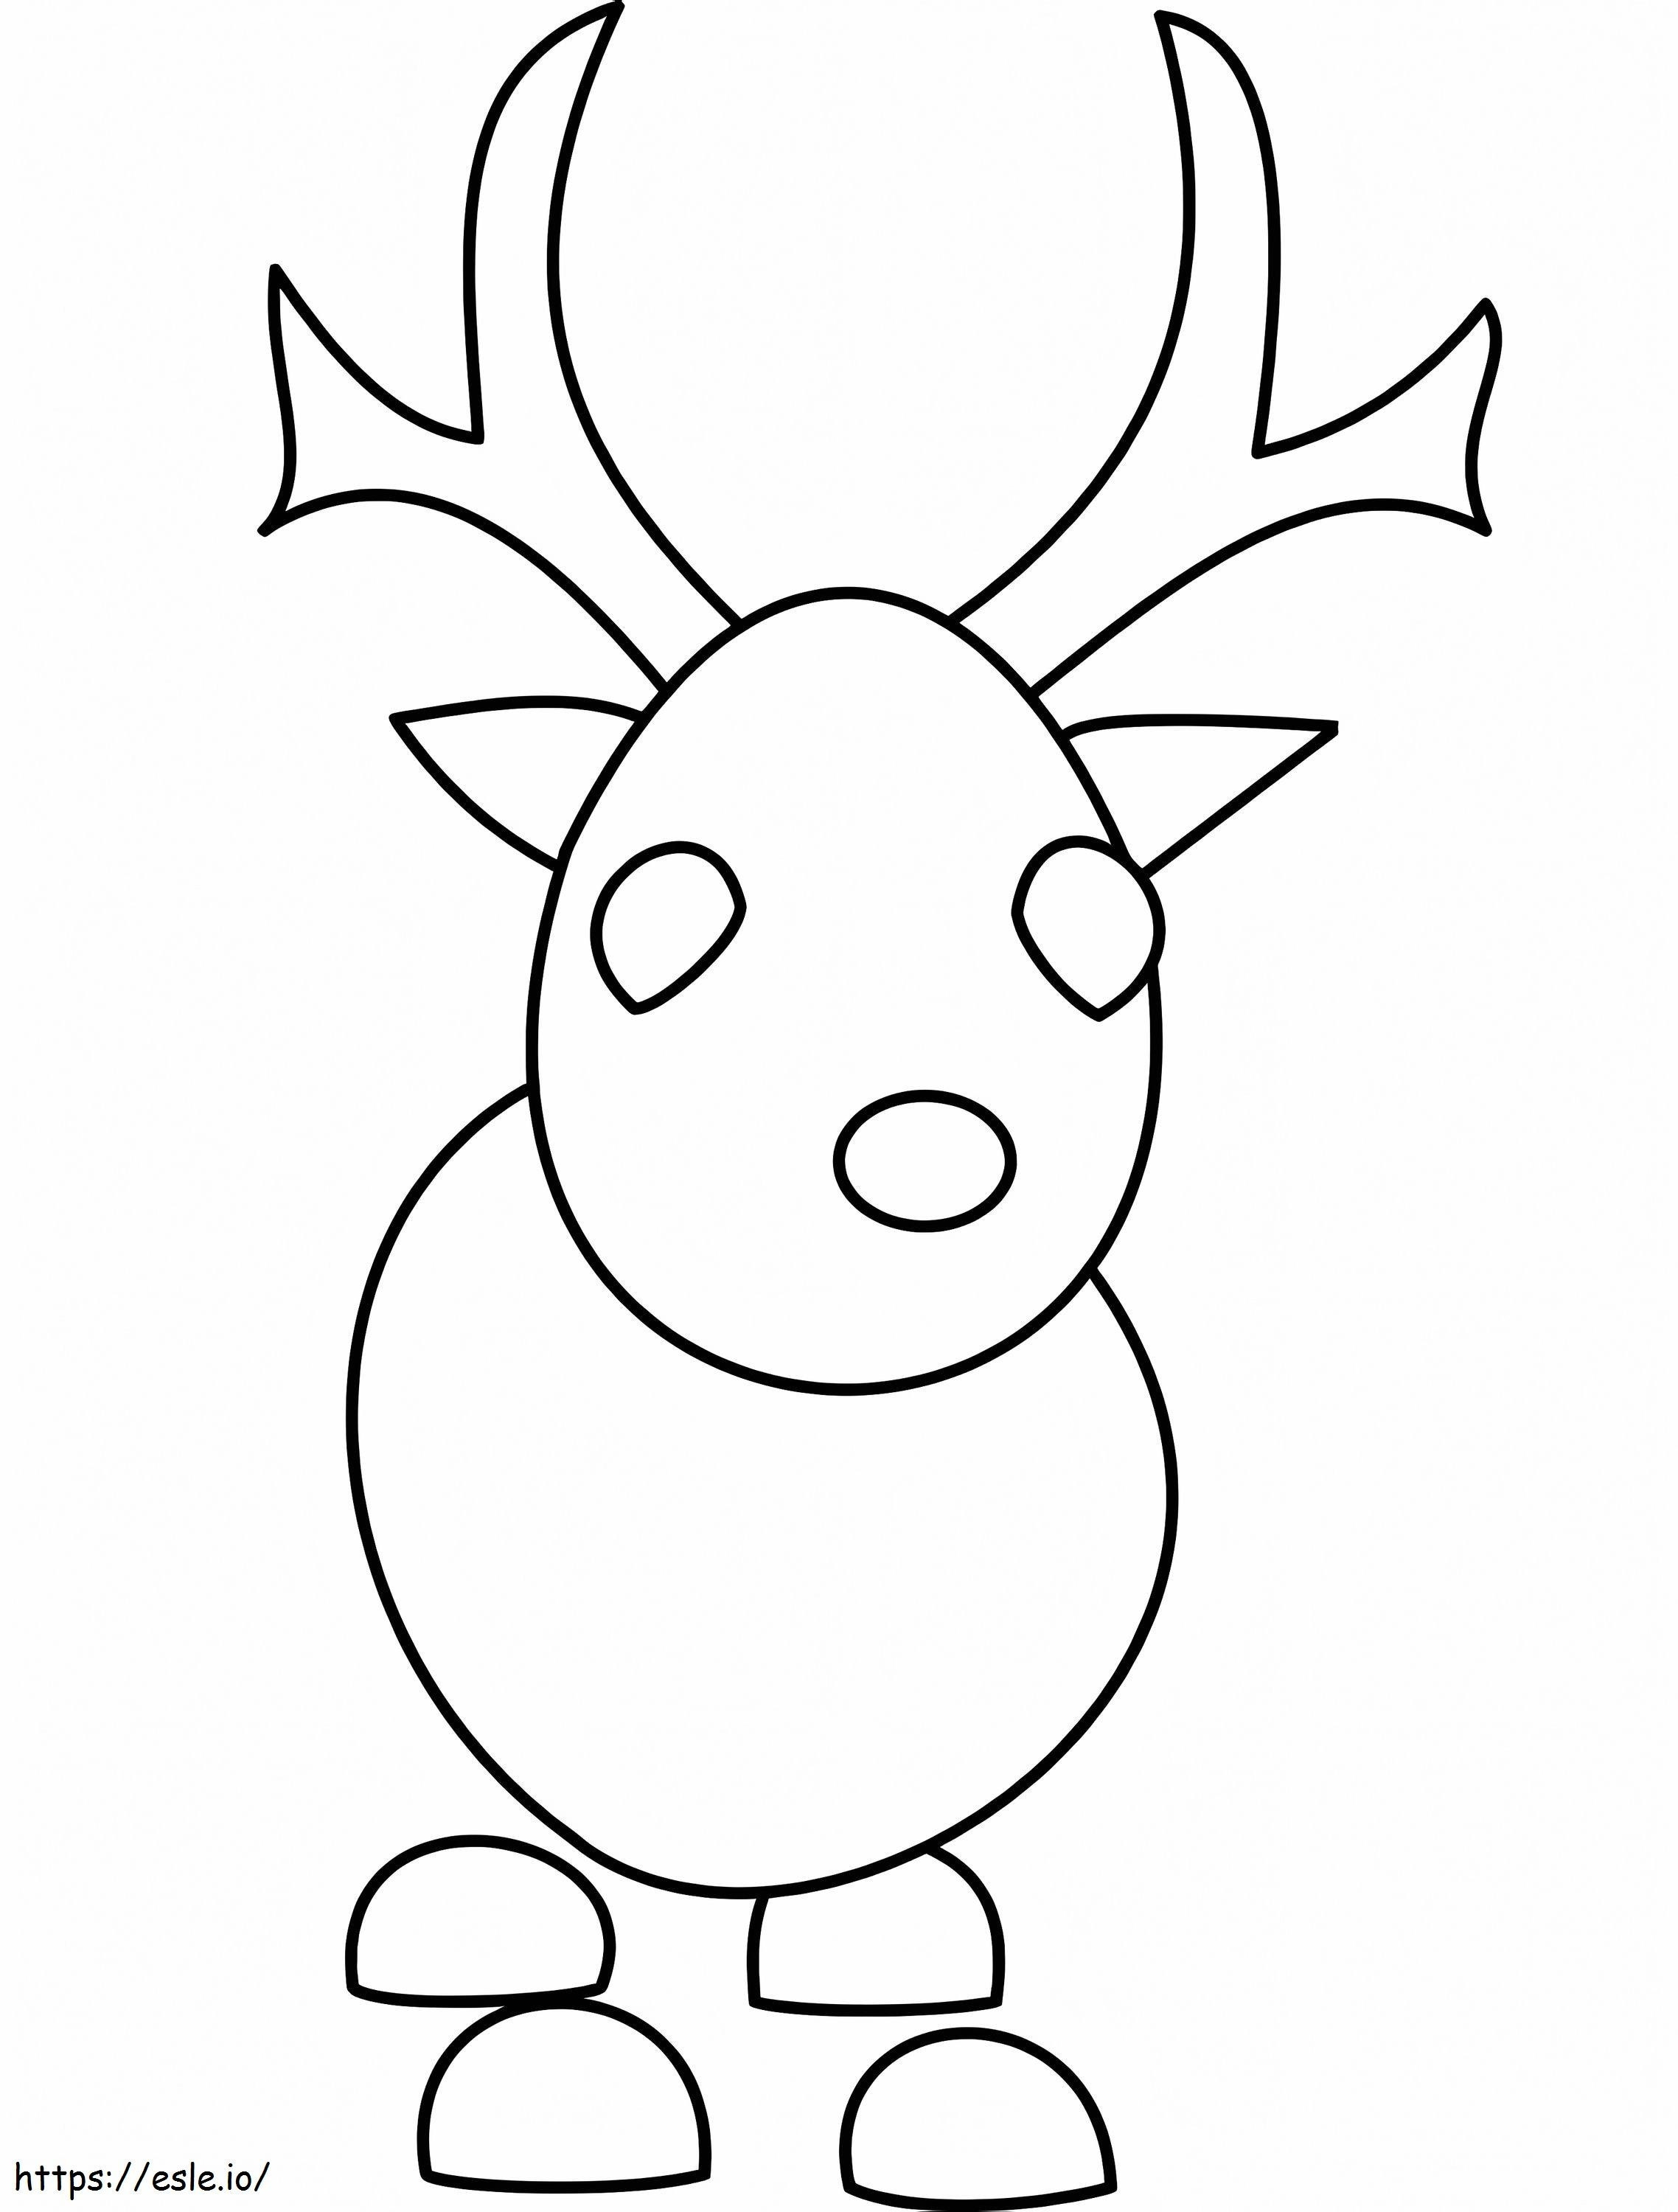 Reindeer Adopt Me coloring page